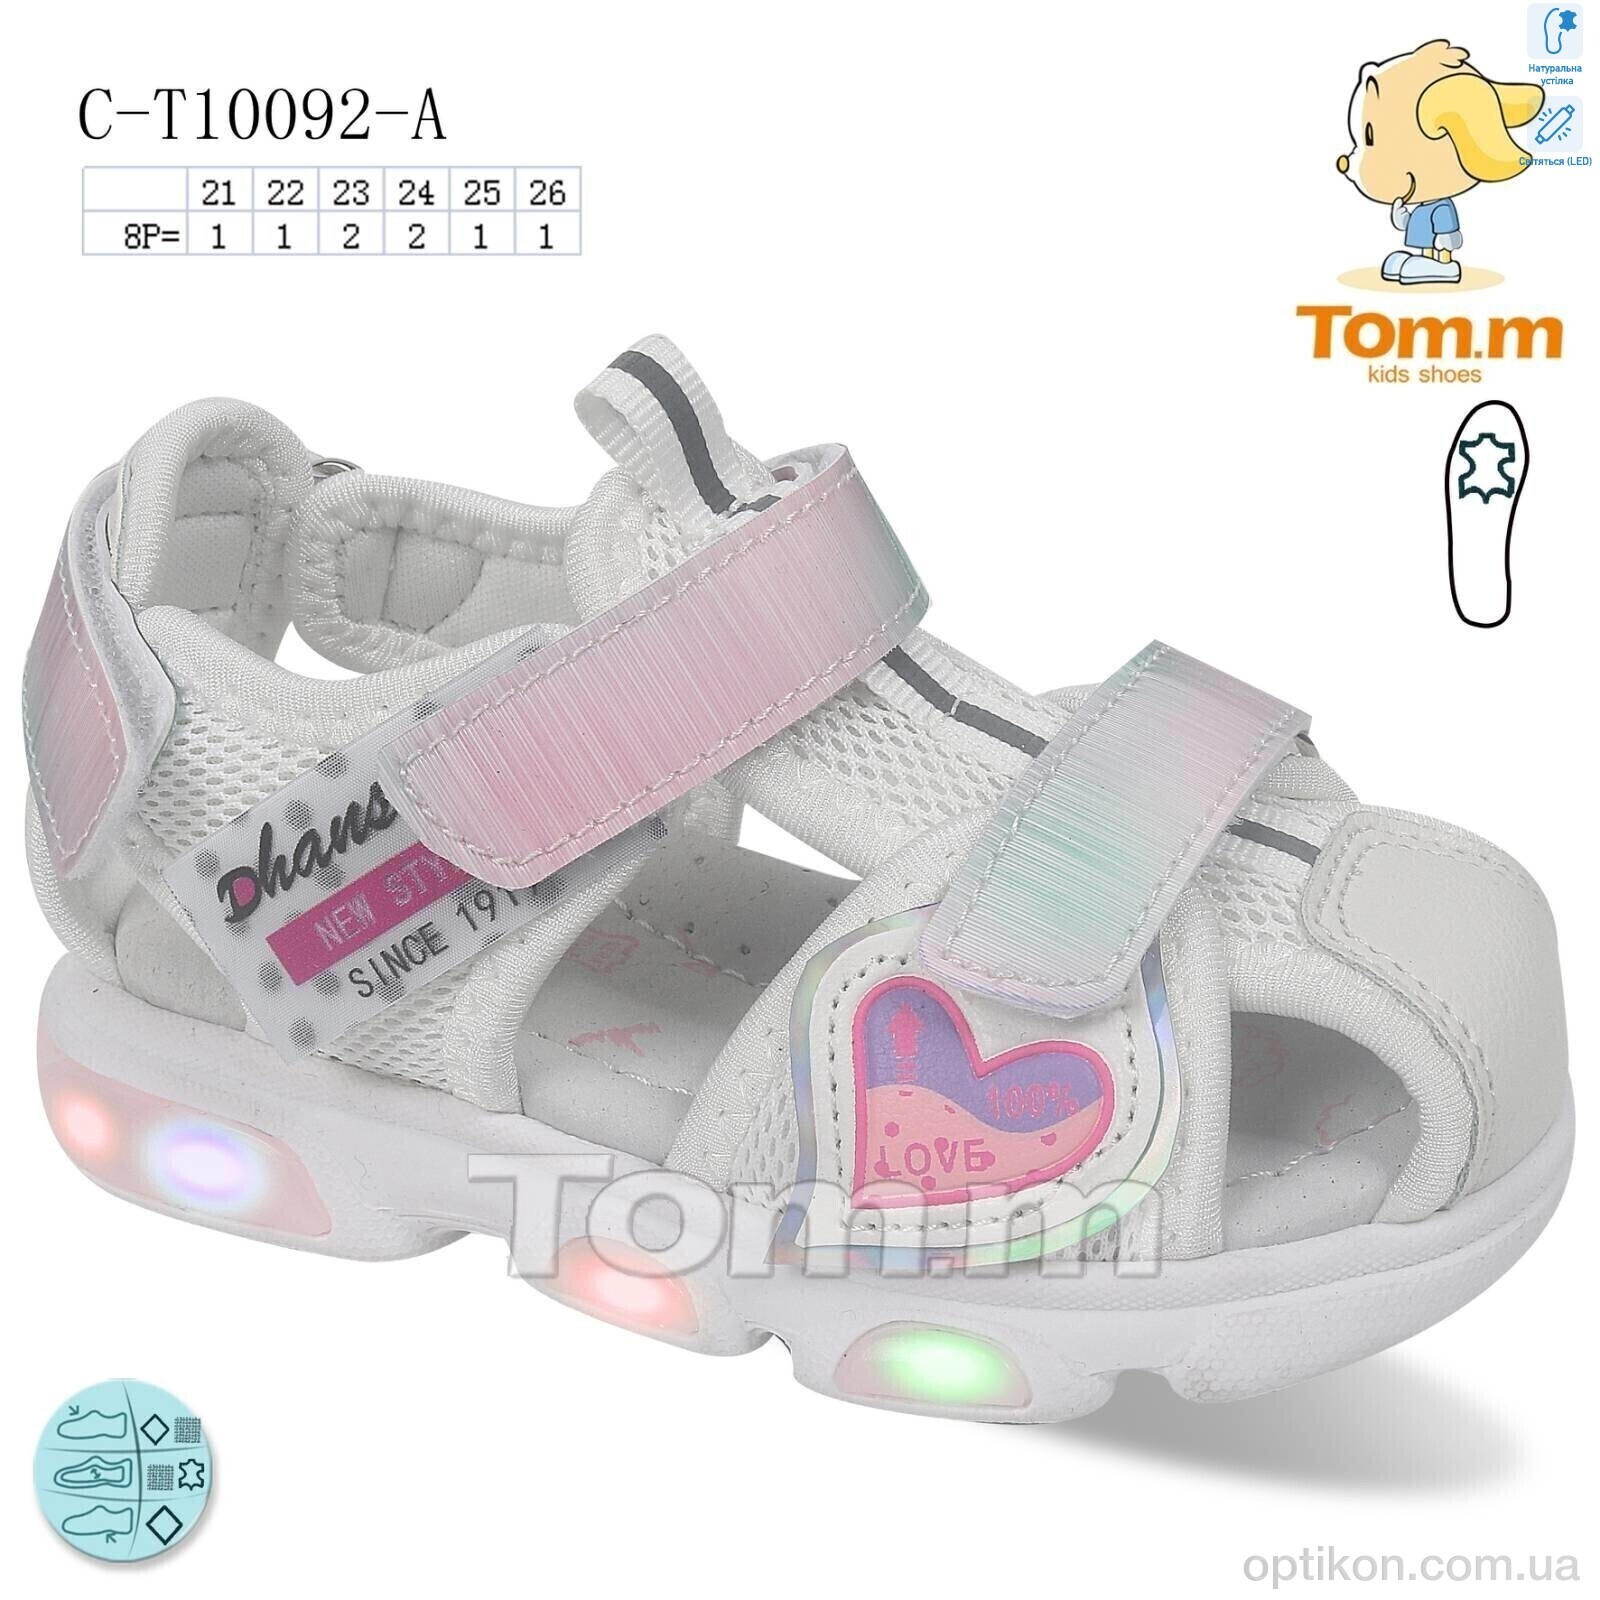 Босоніжки TOM.M C-T10092-A LED